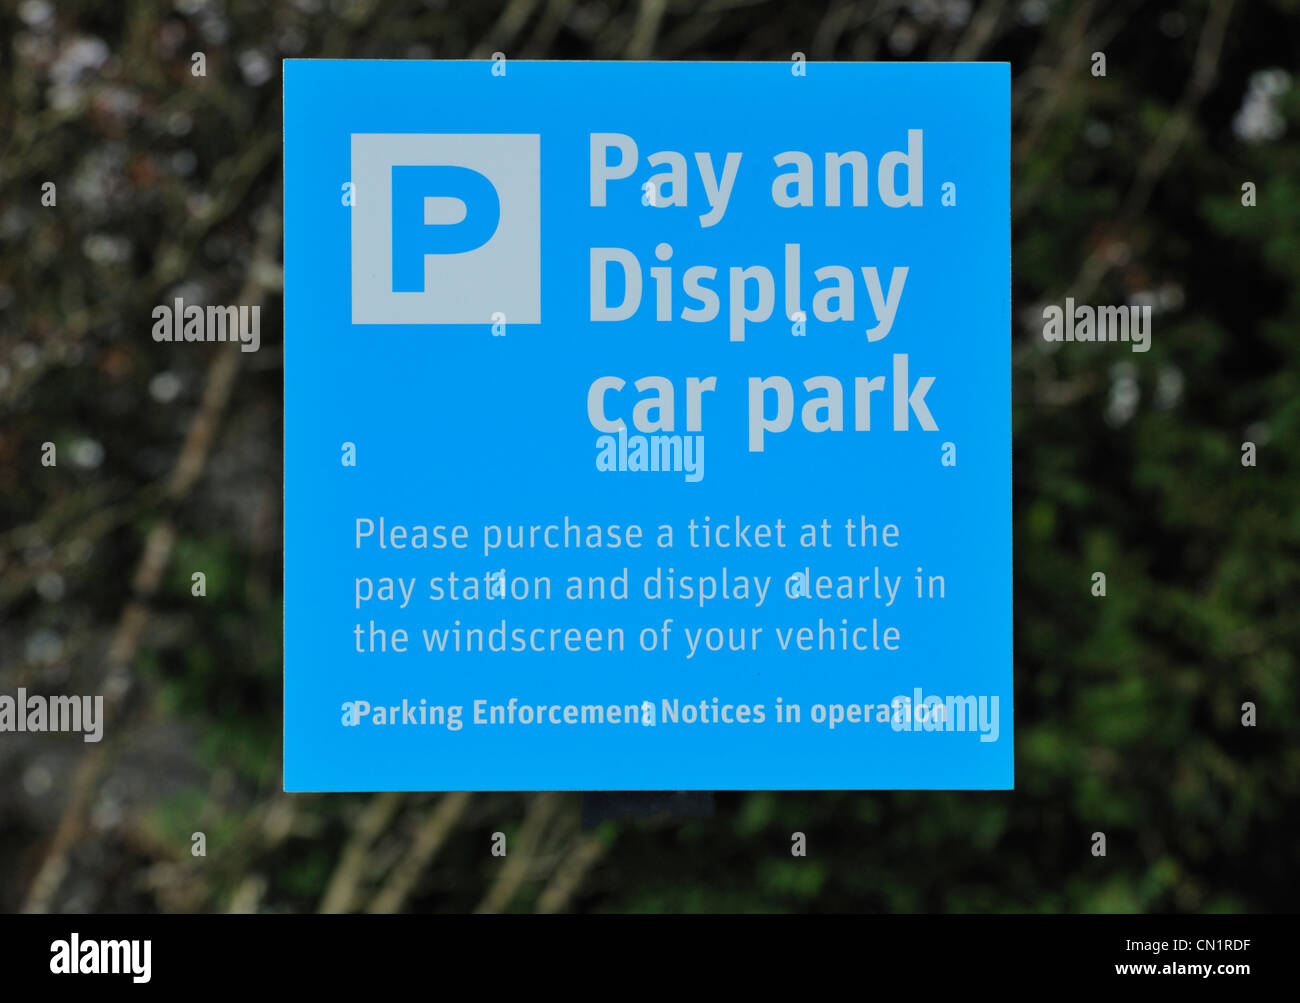 Parking voiture Payer et Afficher un avis au rail station. Grange-over-Sands, Cumbria, Angleterre, Royaume-Uni, Europe. Banque D'Images